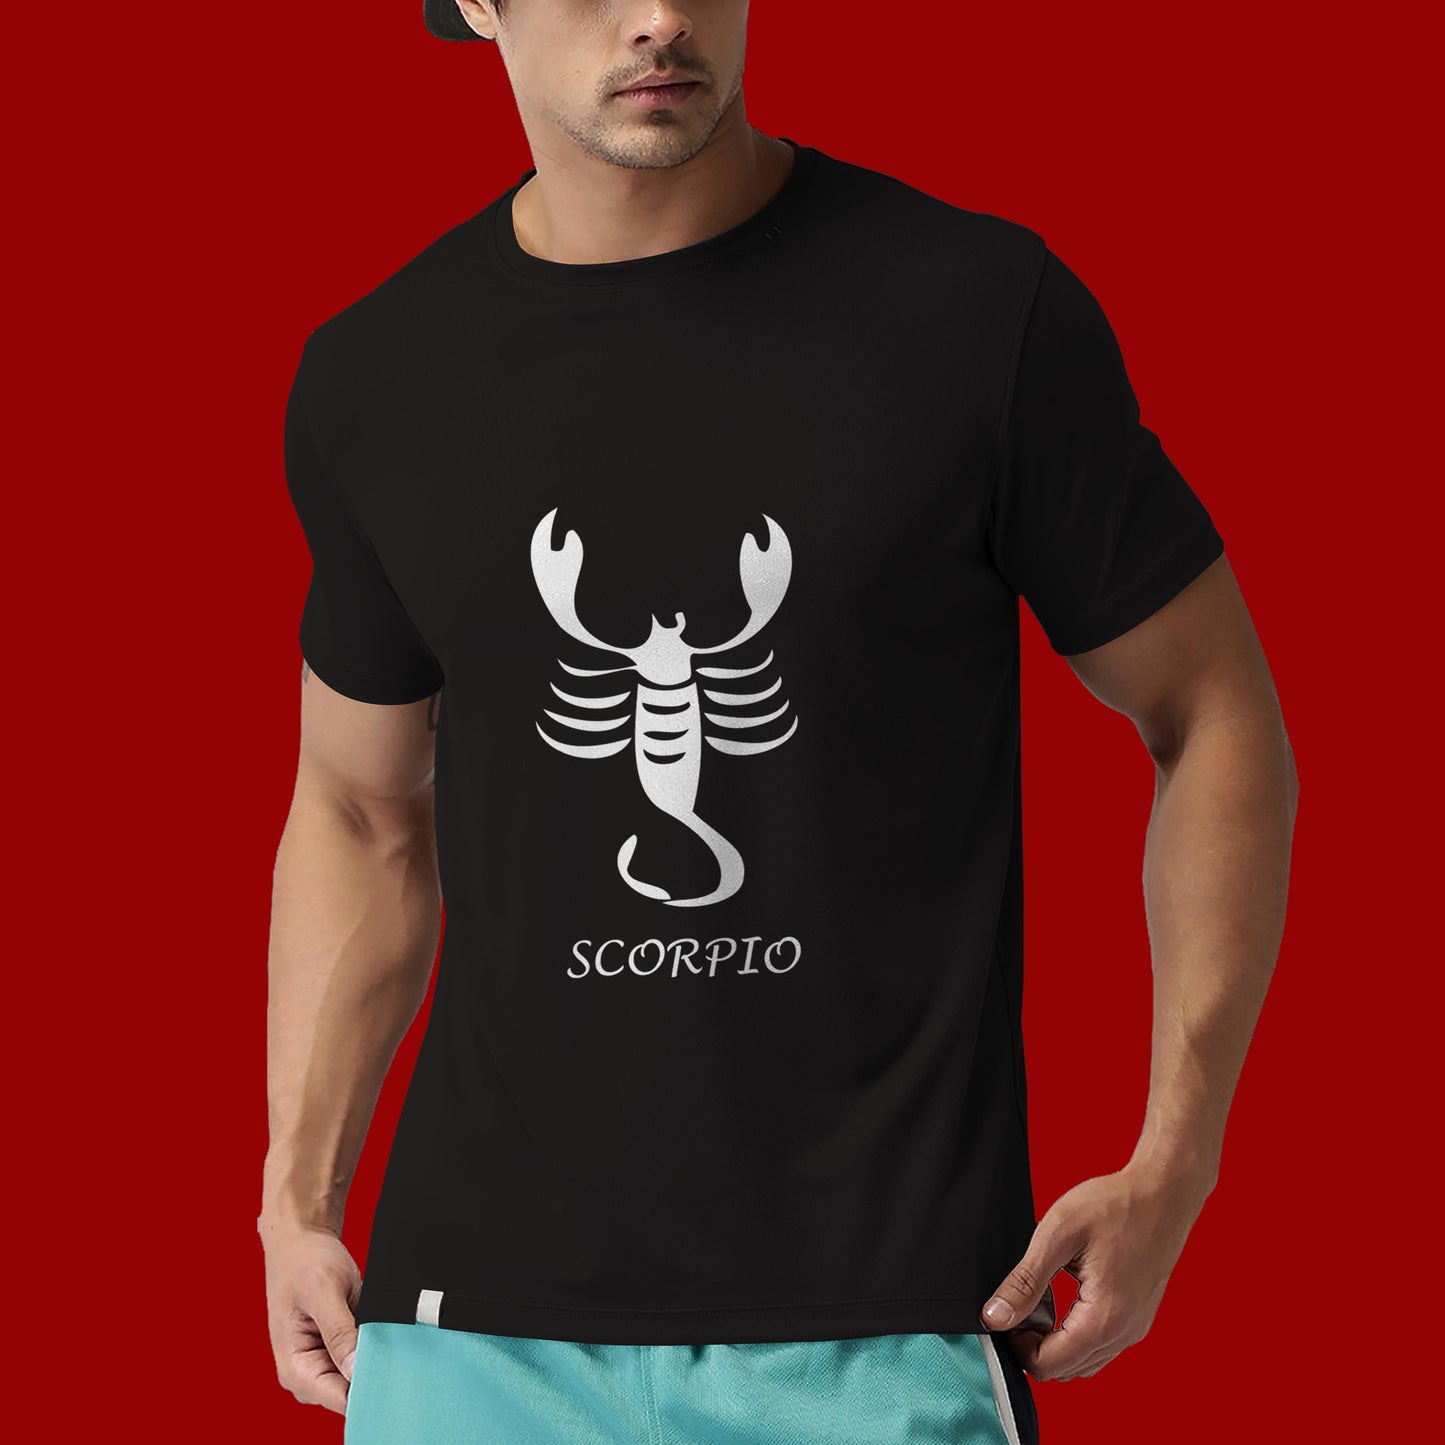 Scorpio zodiac sign tshirt, Personality tshirt, Astrology tshirt- Black